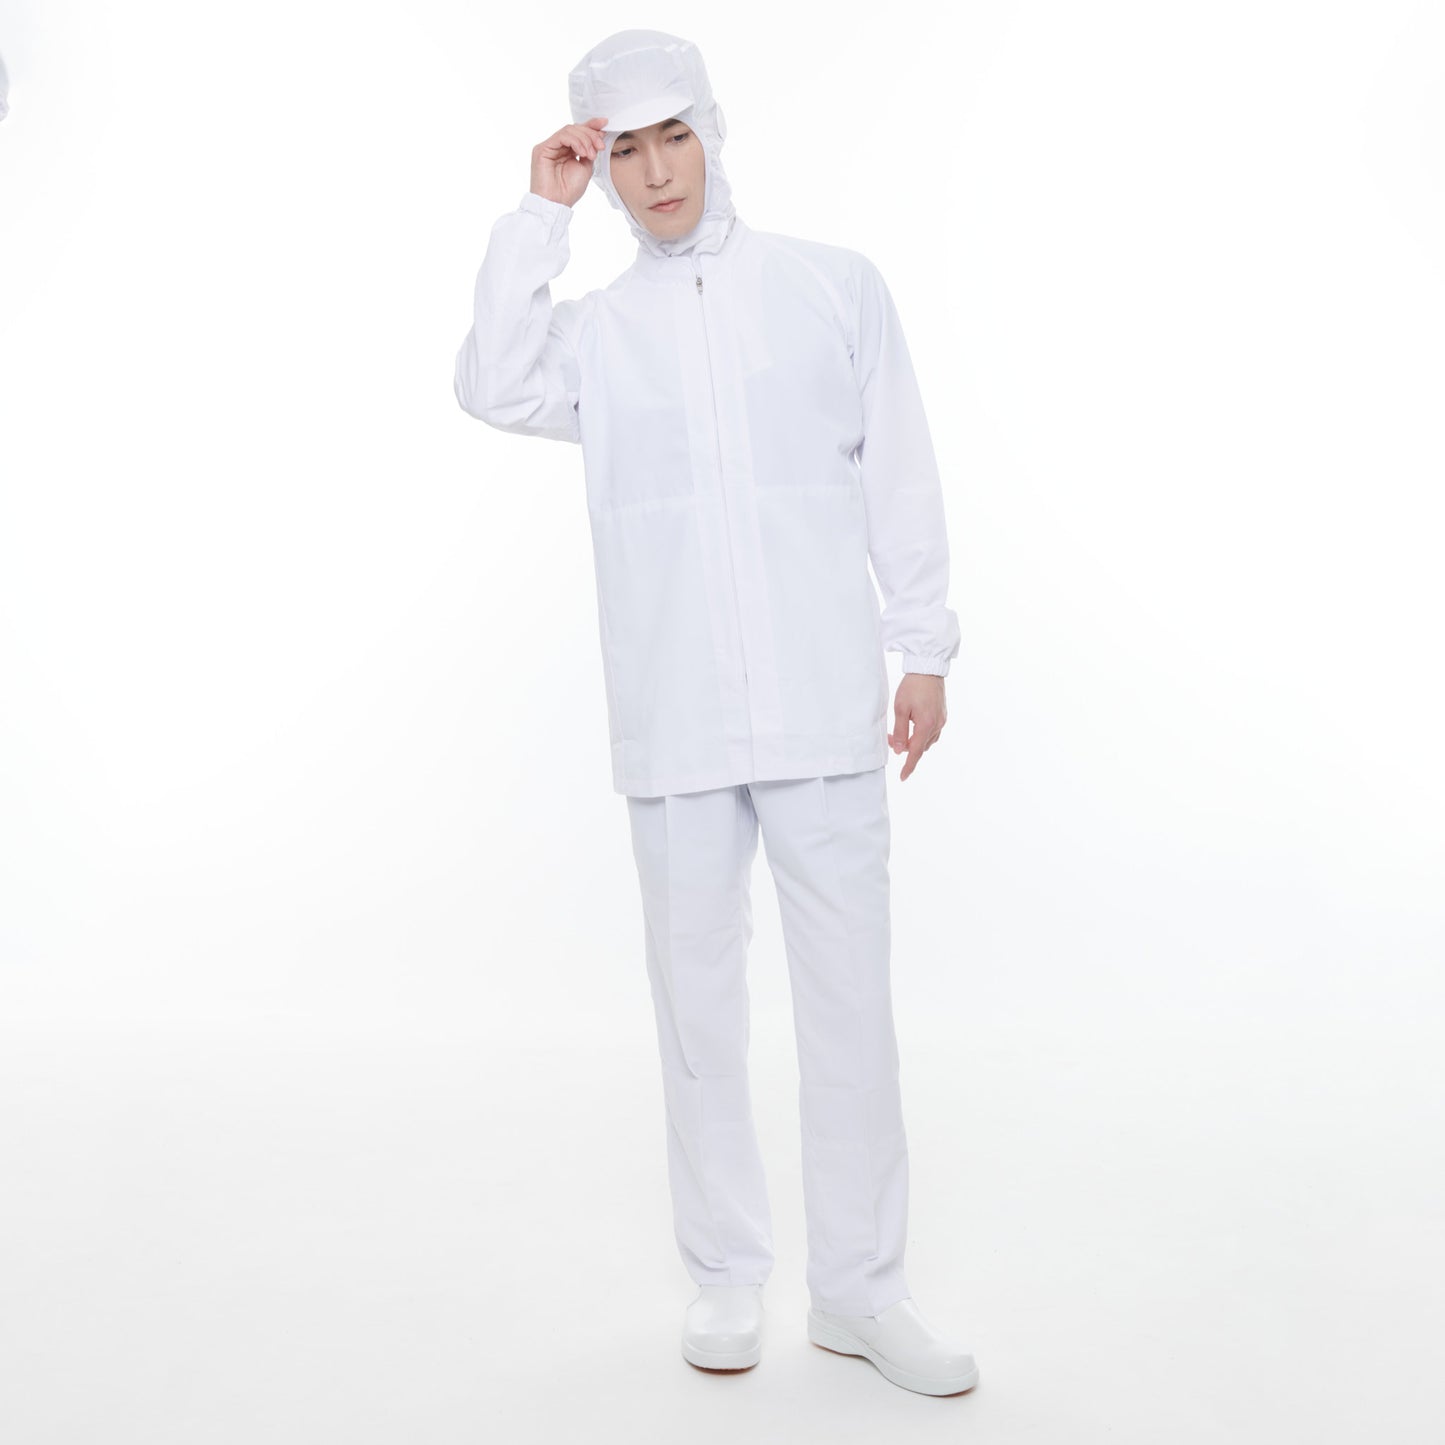 サンエス 食品工場用白衣 フードマイスター 超清涼素材 【男女共用コート】 FX70650R